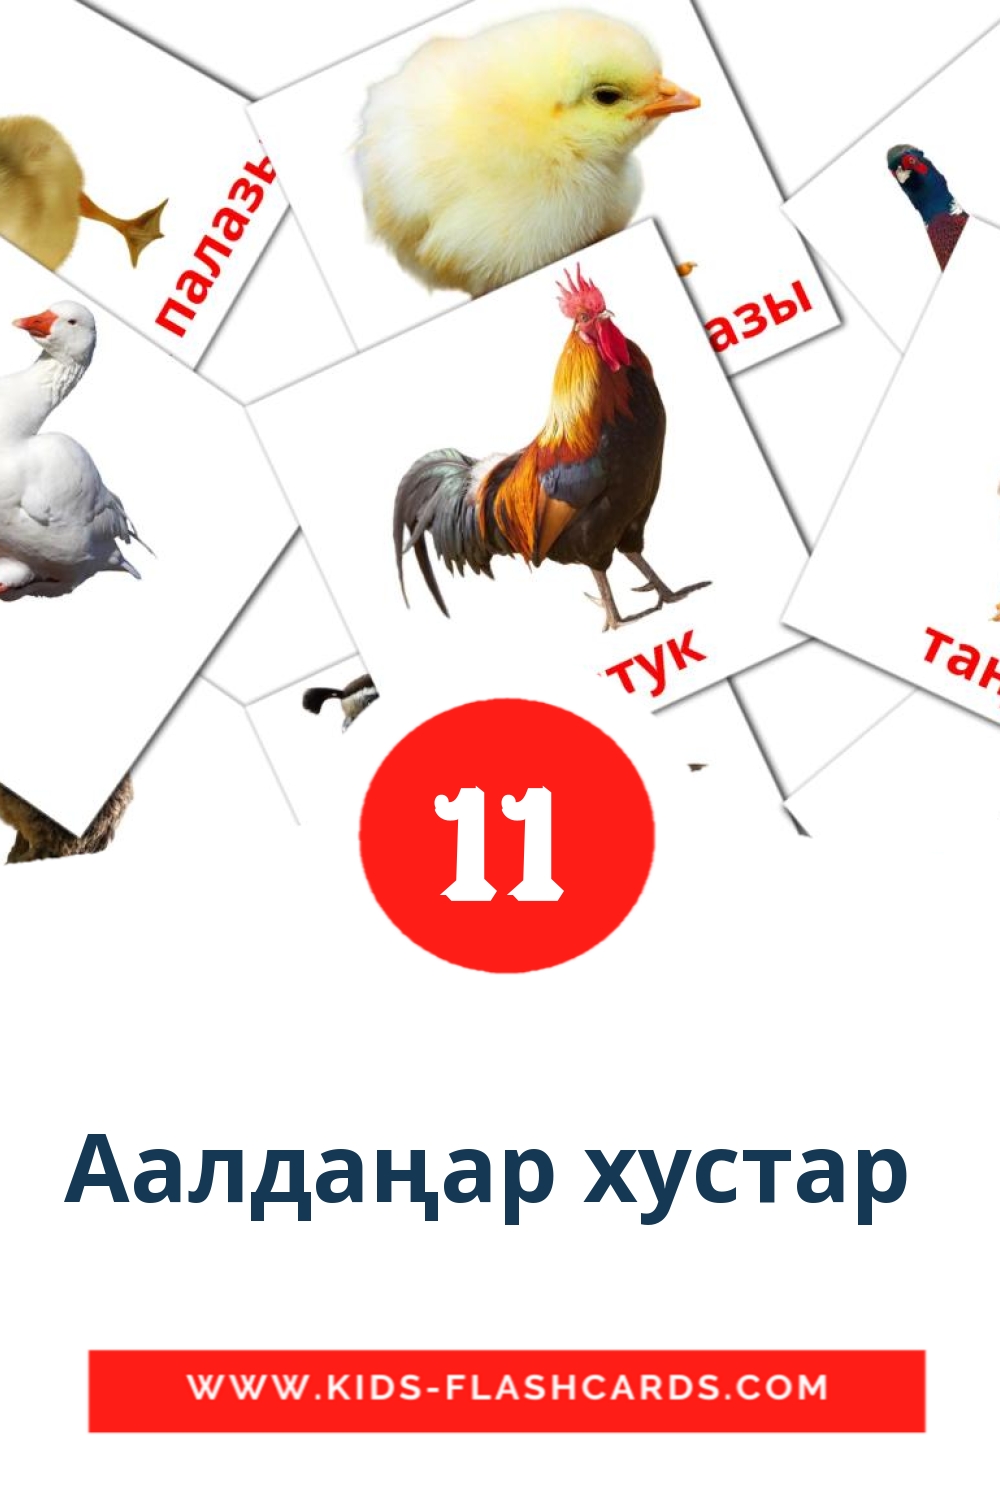 11 Аалдаңар хустар  Bildkarten für den Kindergarten auf Kirgisisch